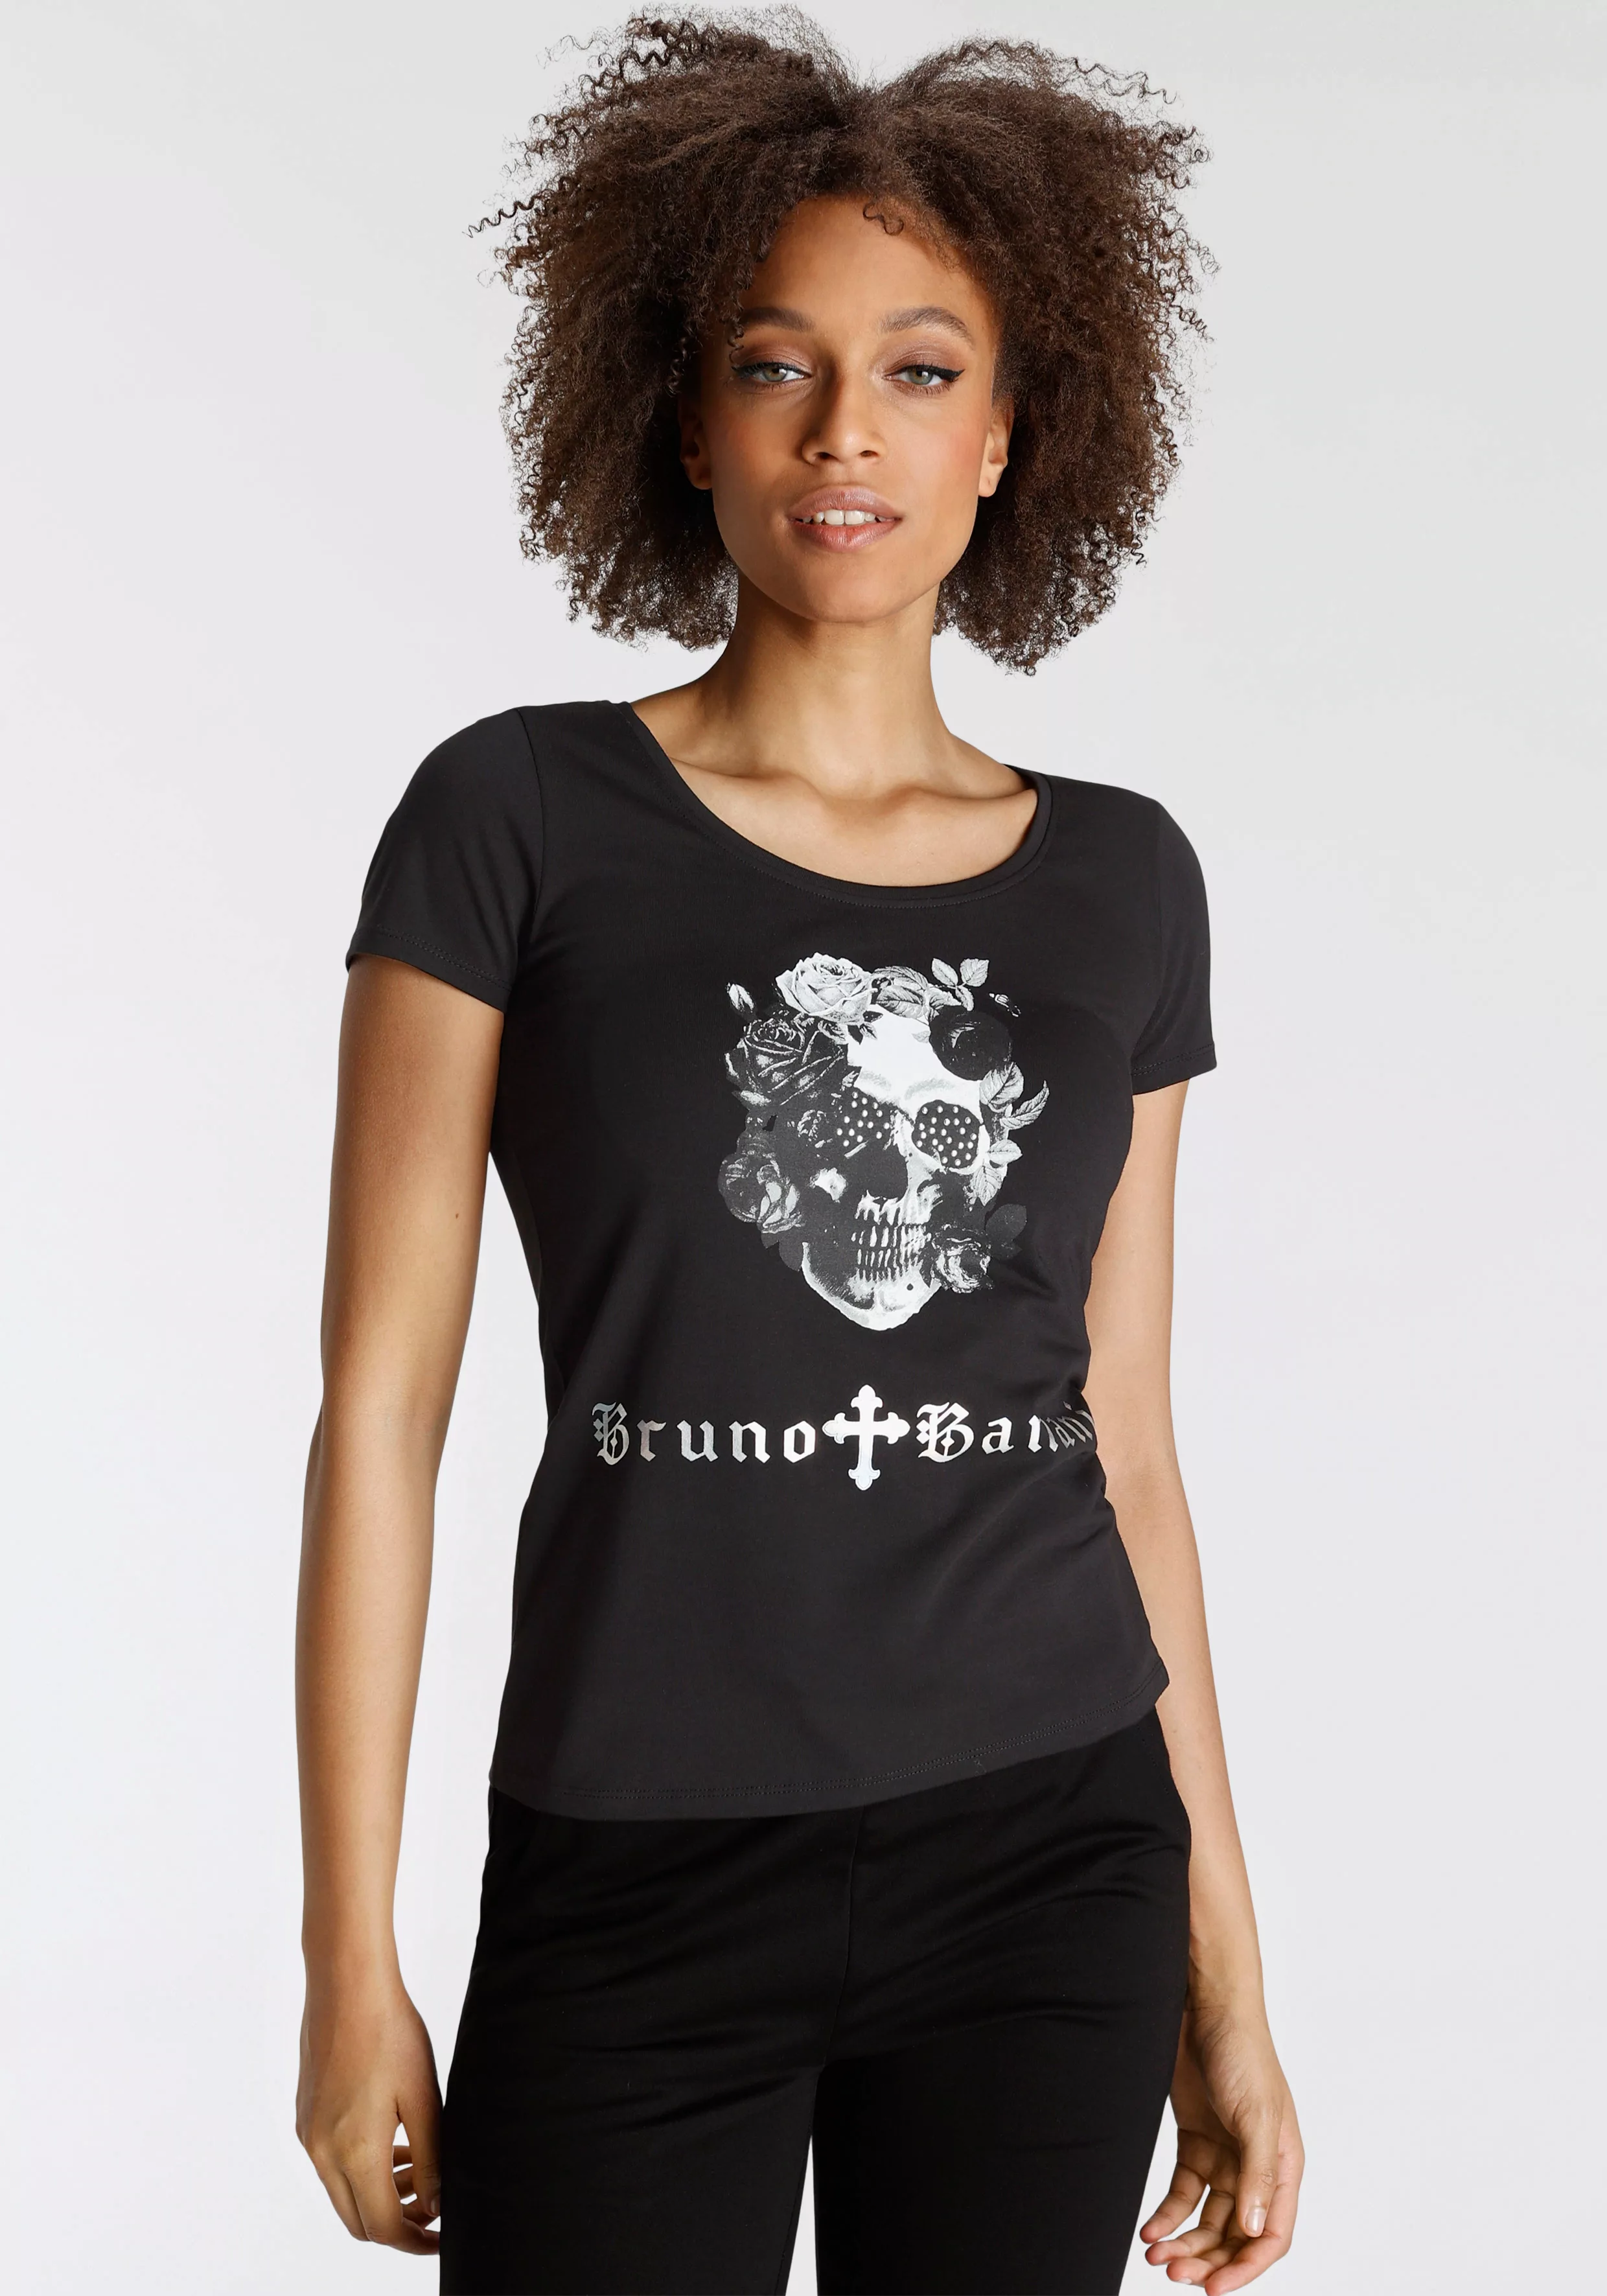 Bruno Banani T-Shirt mit coolem Print günstig online kaufen